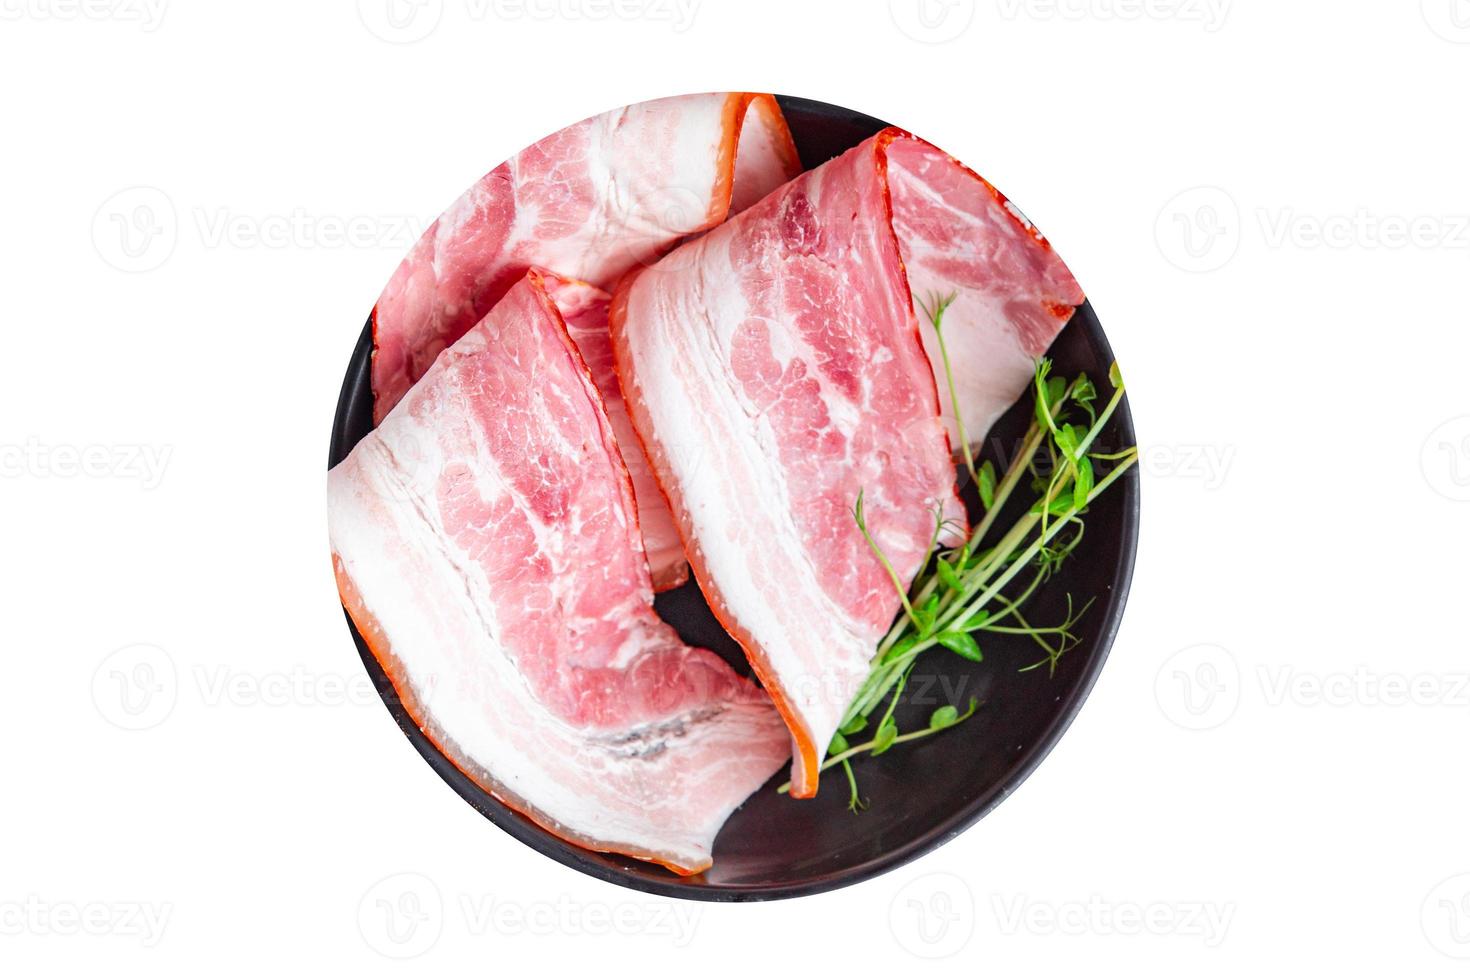 Scheiben Speck frischer Bauch Schweinefleisch Stück Fleisch Essen Hintergrund foto